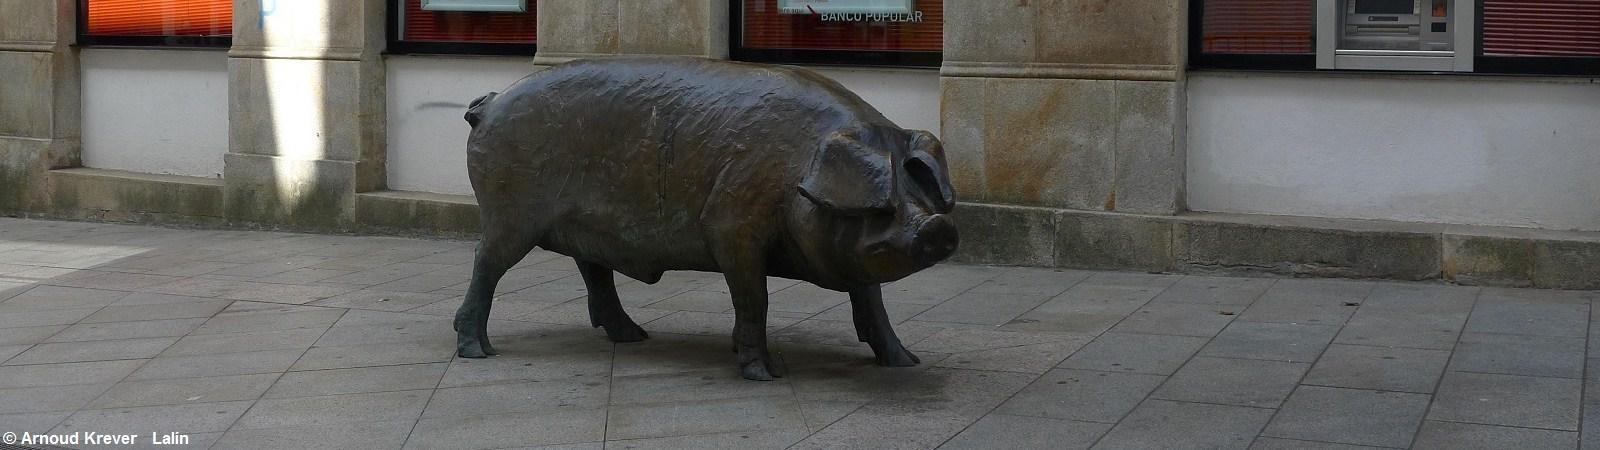 16Invier (454) LALÍN, bronzen beeld van een varken